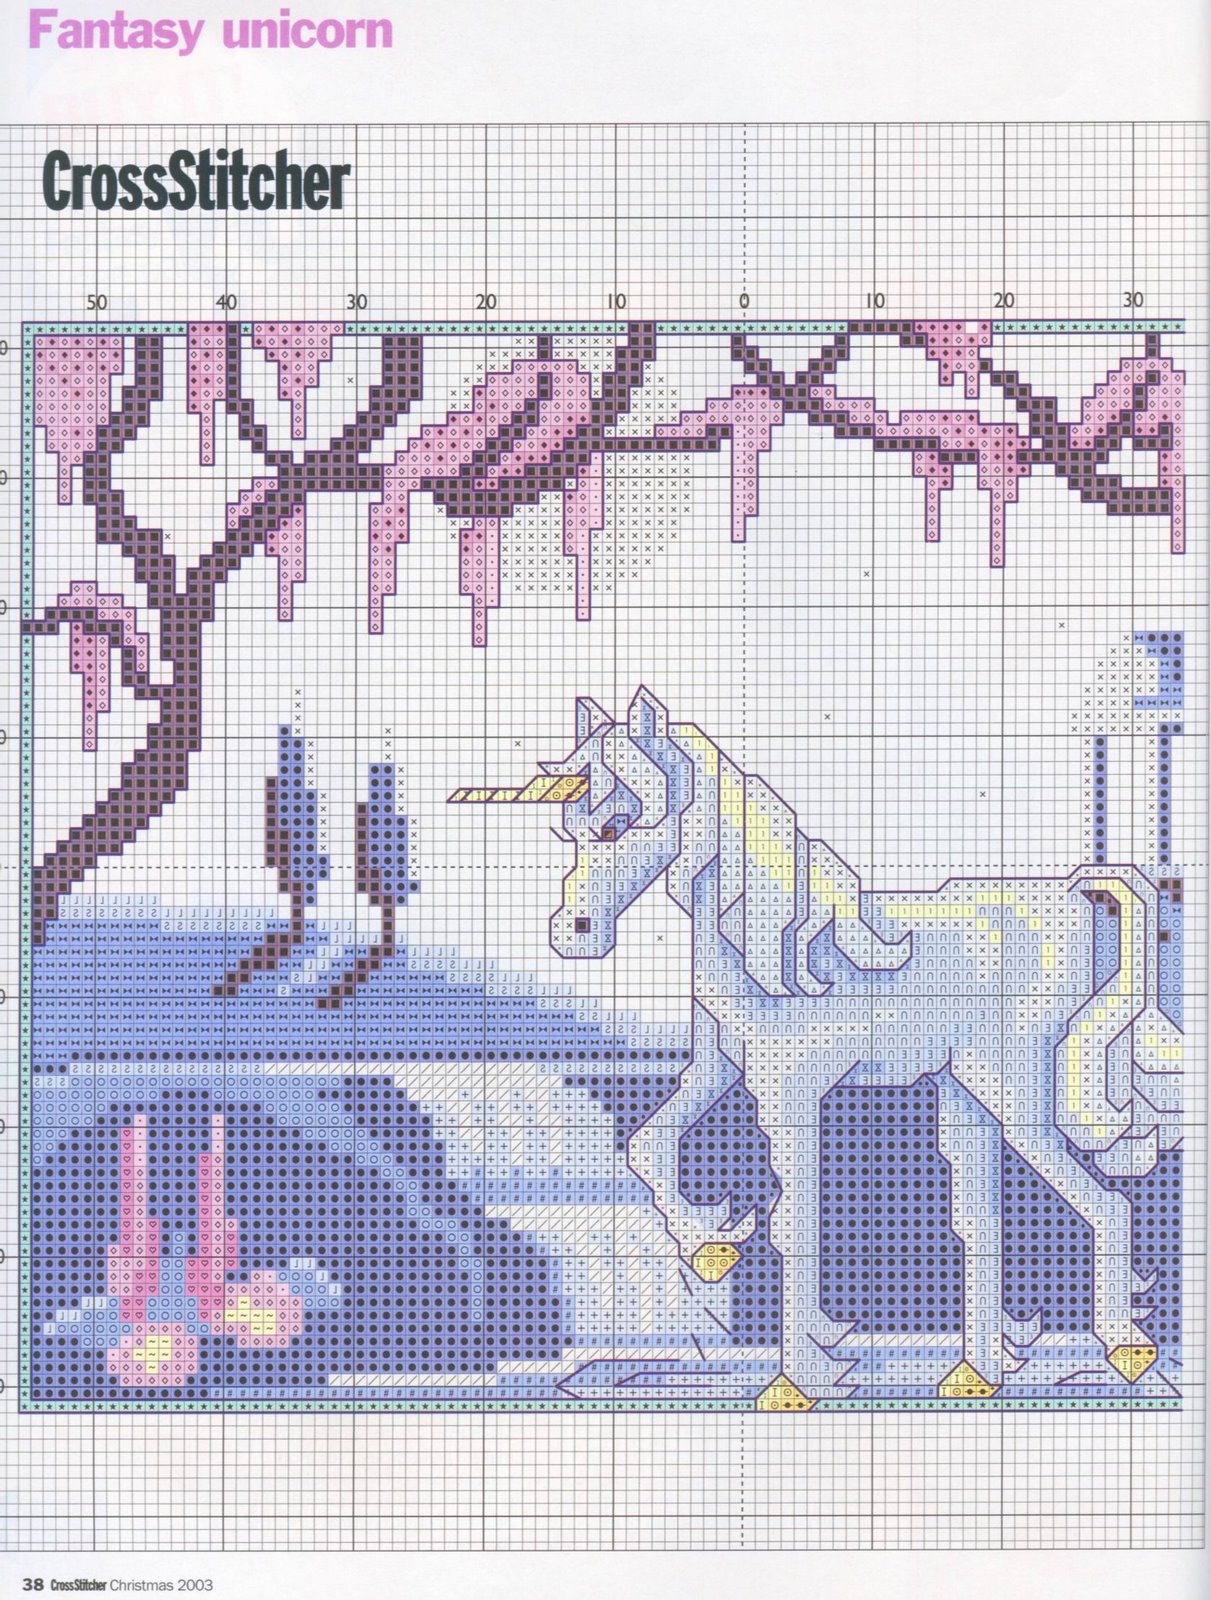 Cross stitch pattern purple unicorn fantasy (2)